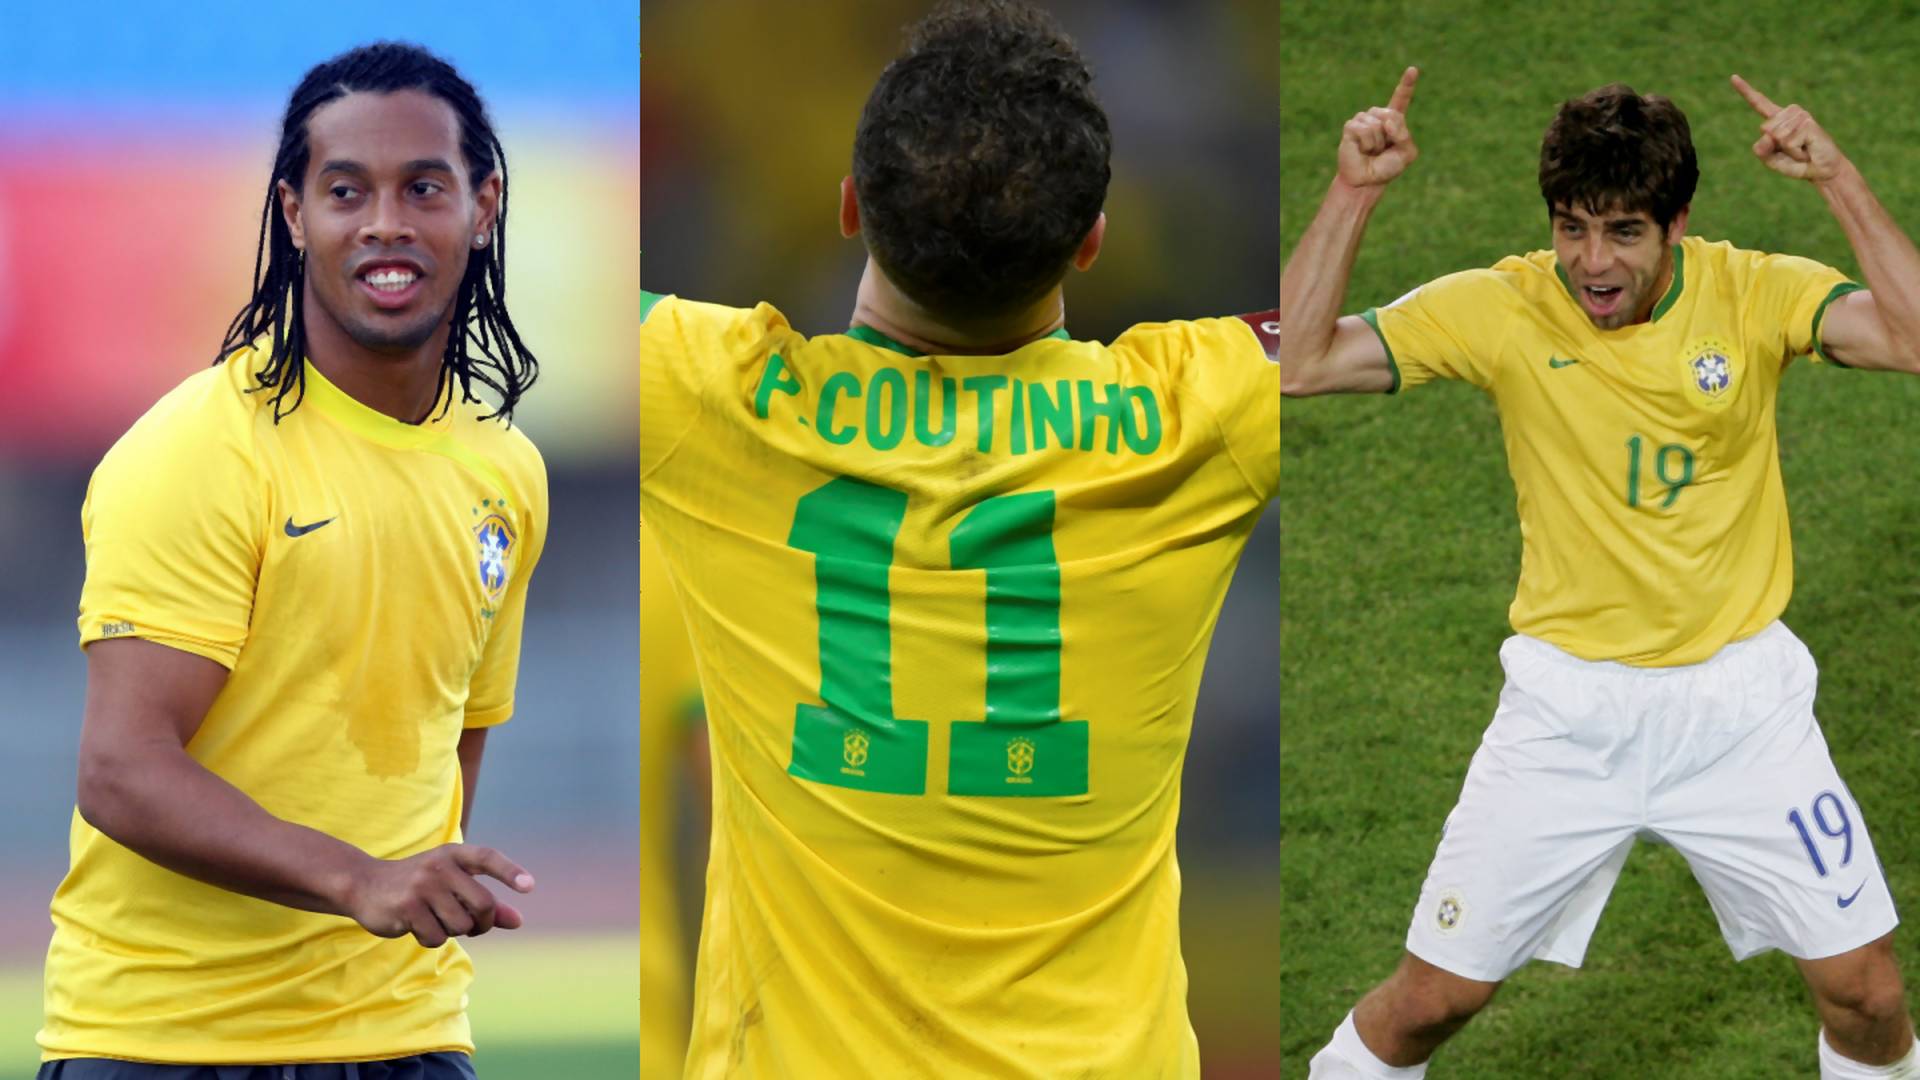 Tudod miért végződik számos brazil focista neve inhoval? Mutatjuk a választ!